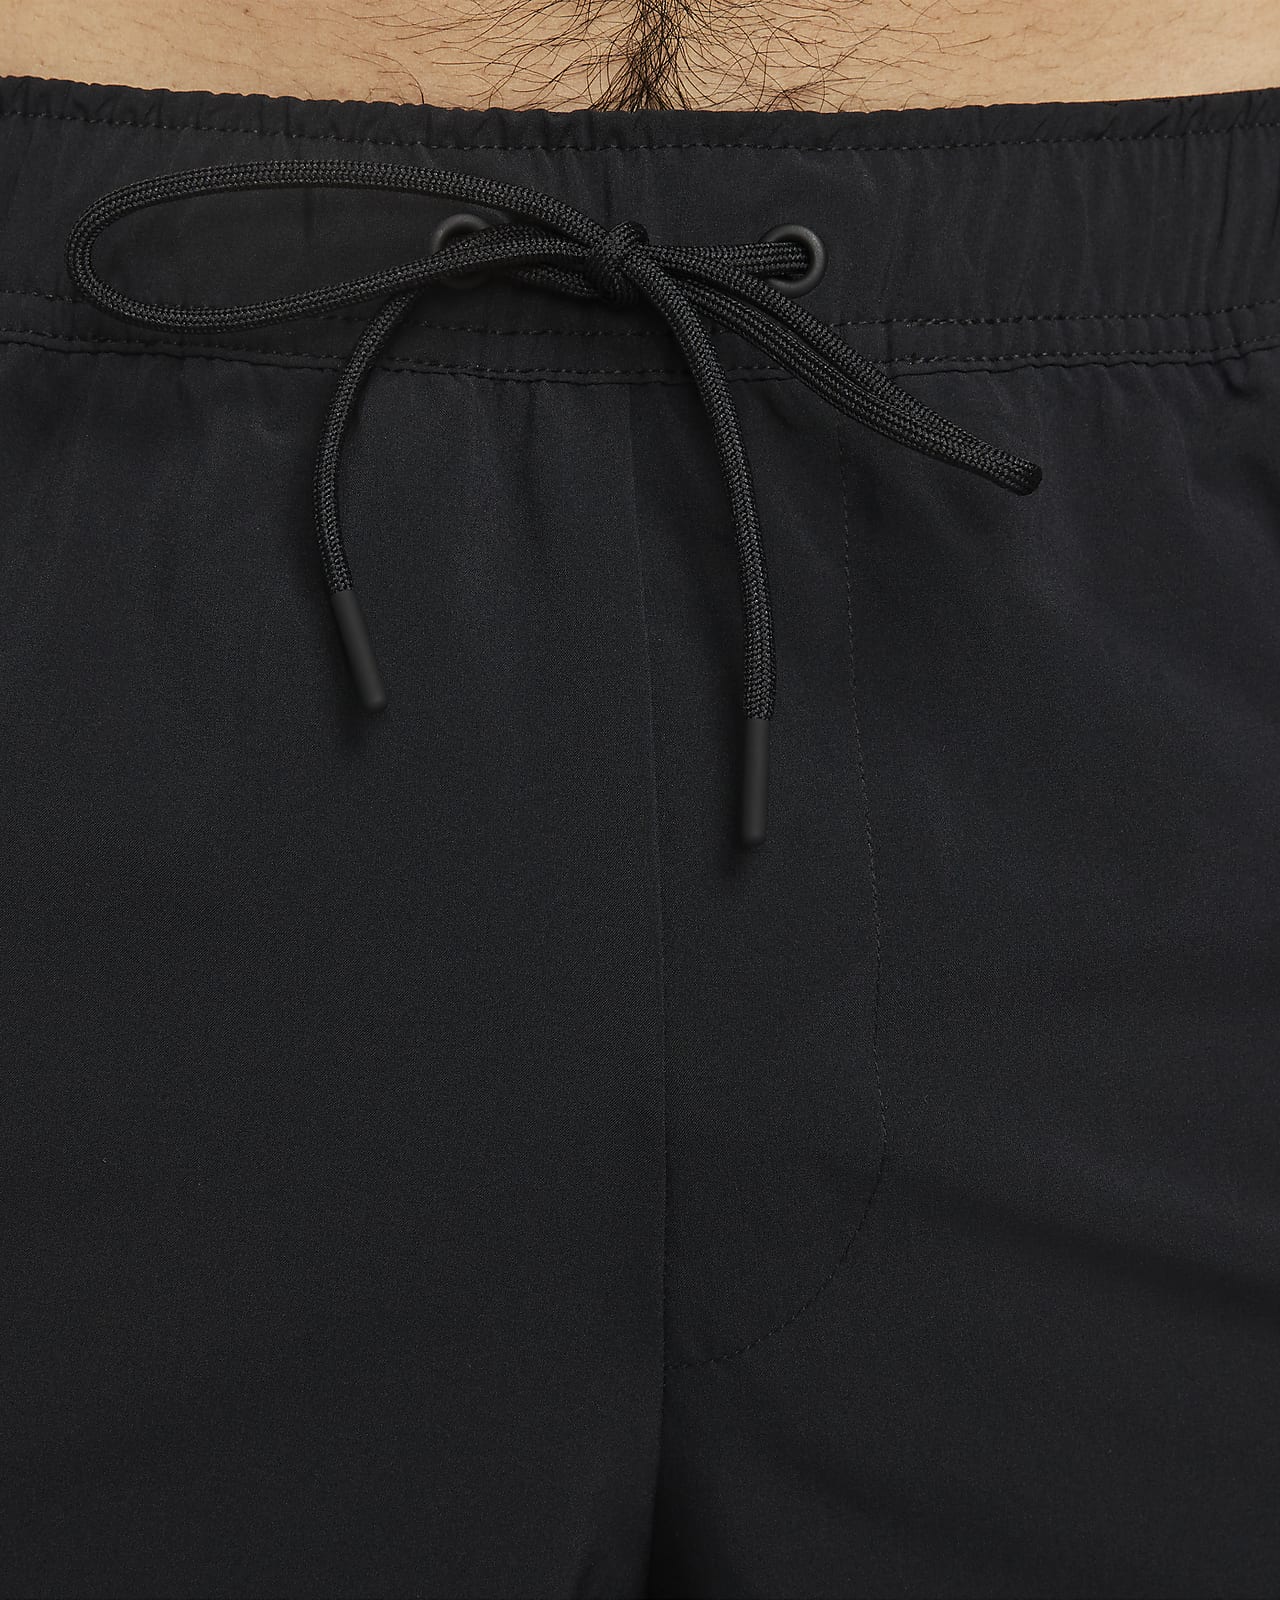 ナイキ Dri-FIT アンリミテッド メンズ 18cm アンラインド バーサタイル ショートパンツ